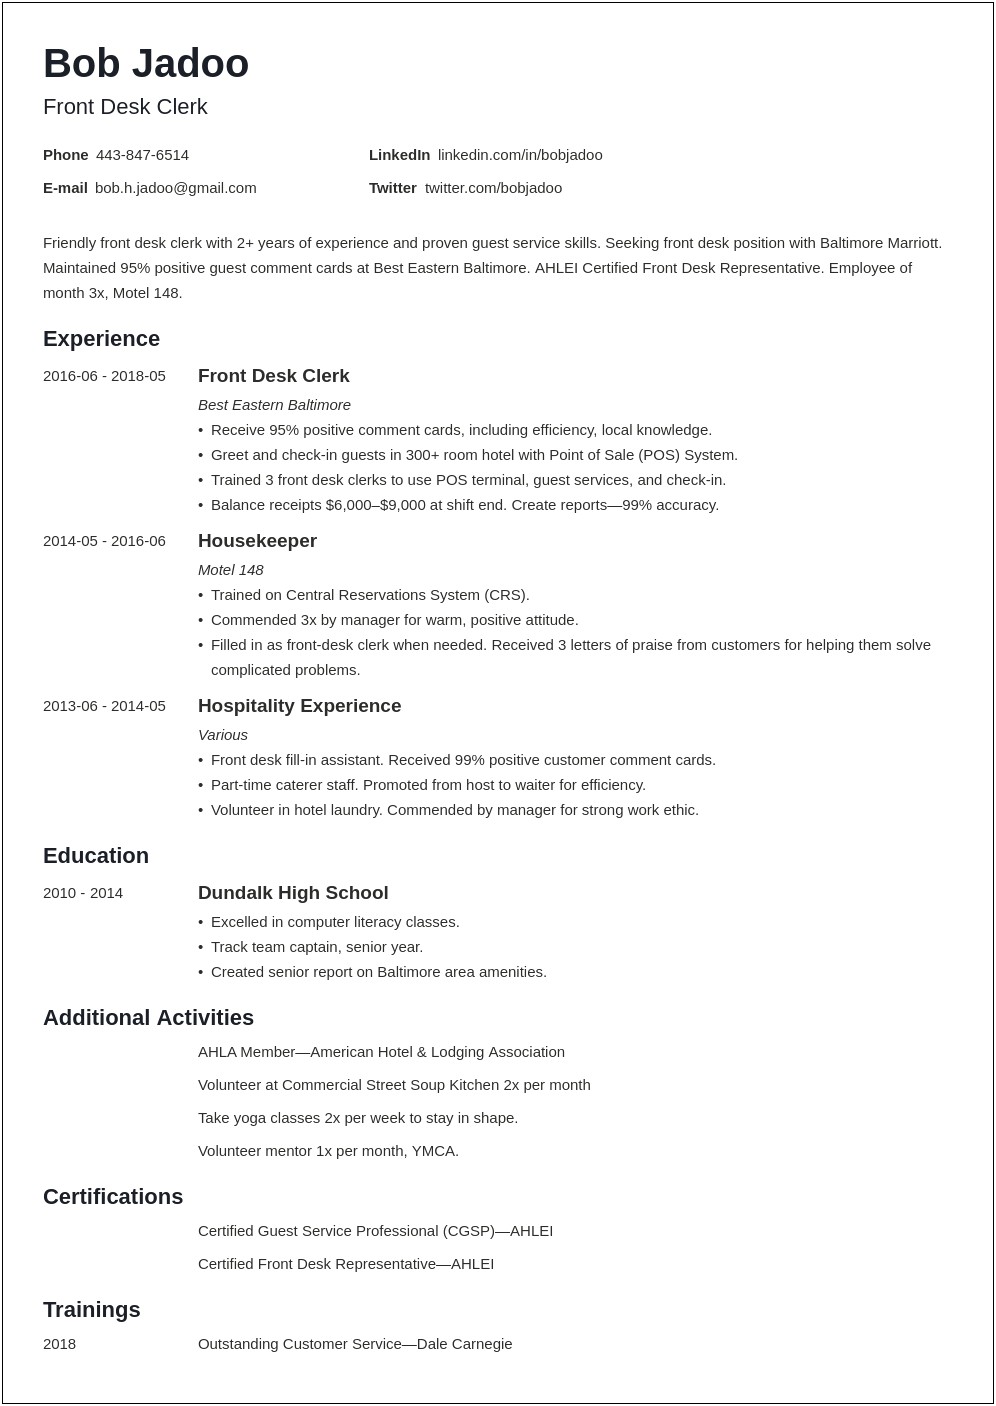 Sample Resume Skills For Ojt Tourism Students